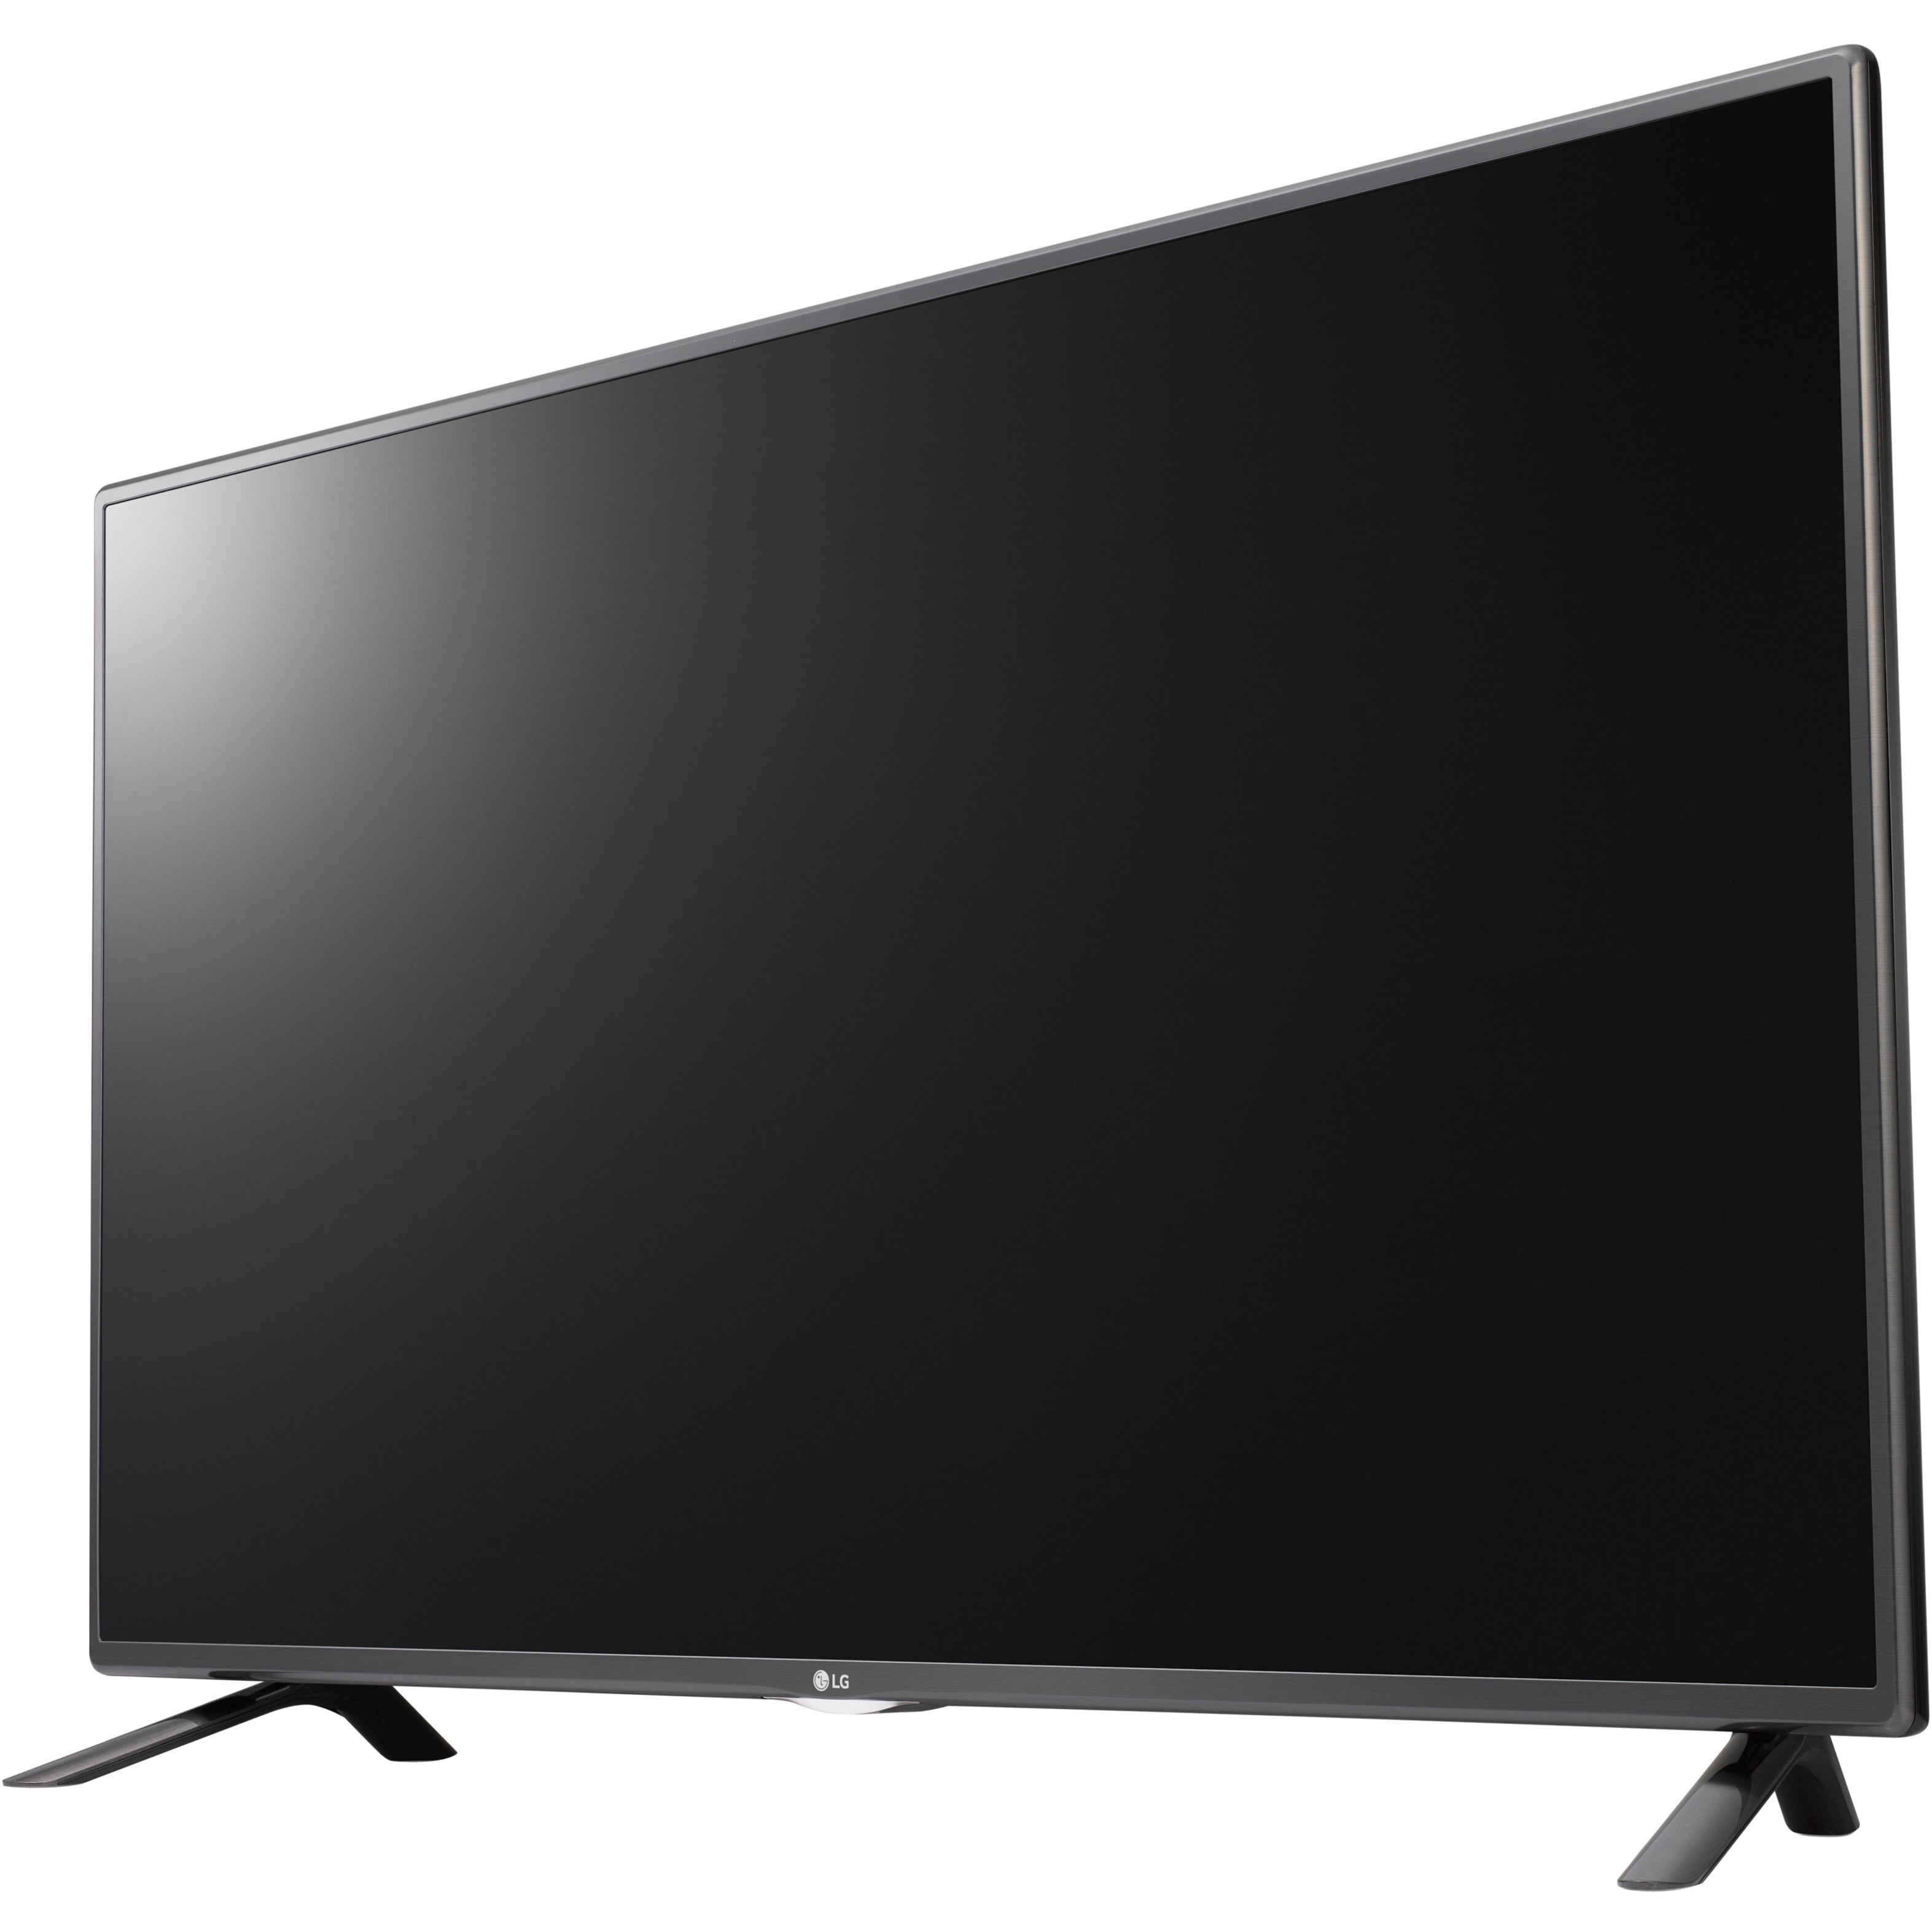 LG 60" Class TV (60LF6100) - Walmart.com